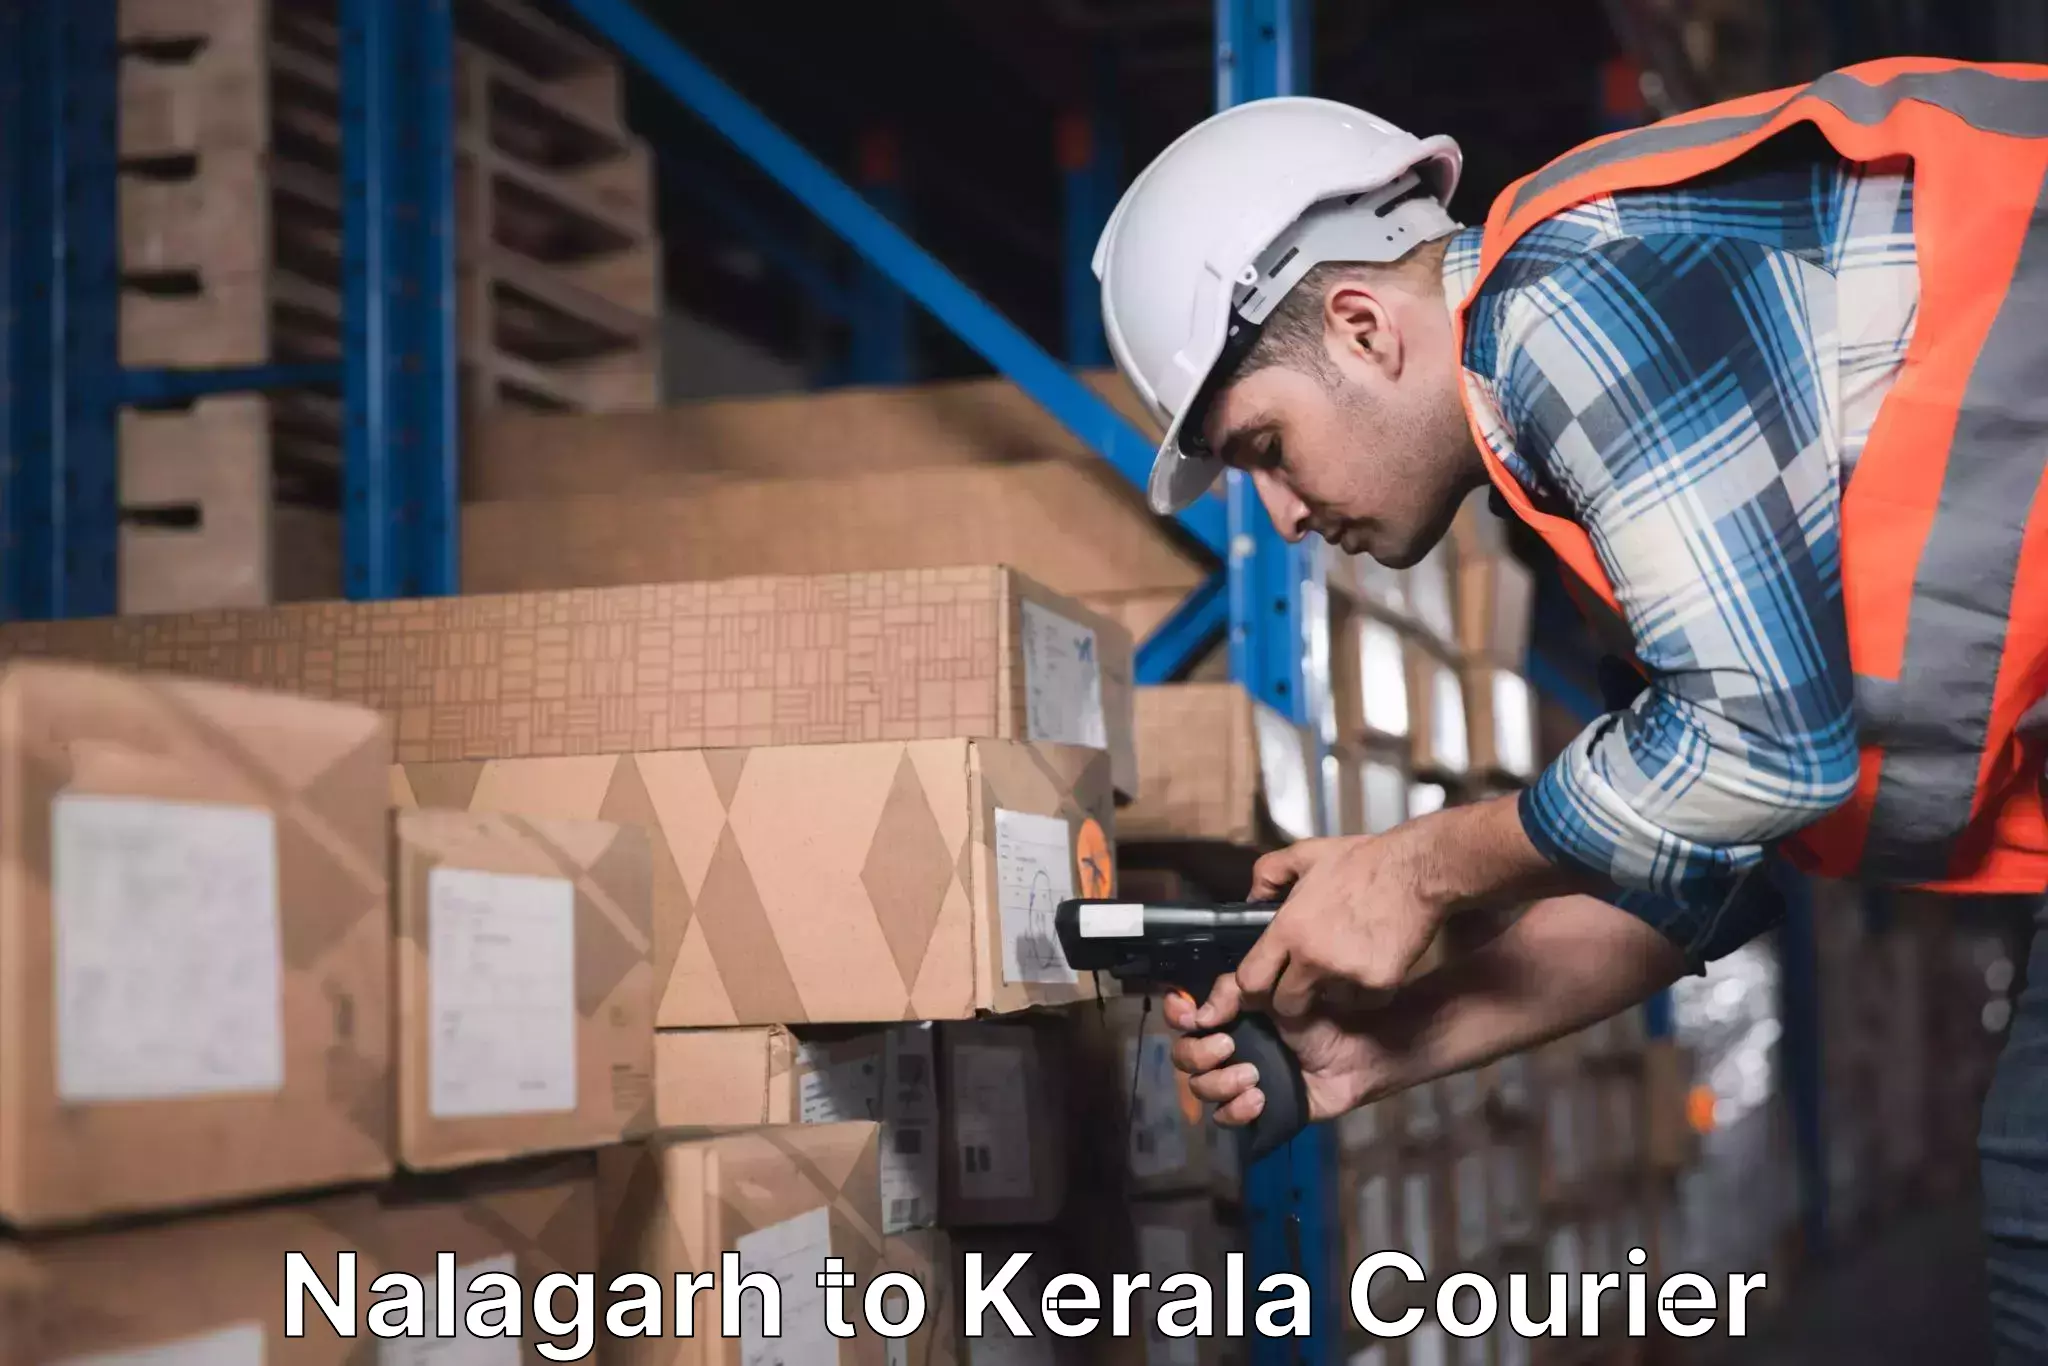 Reliable shipping partners Nalagarh to Kerala